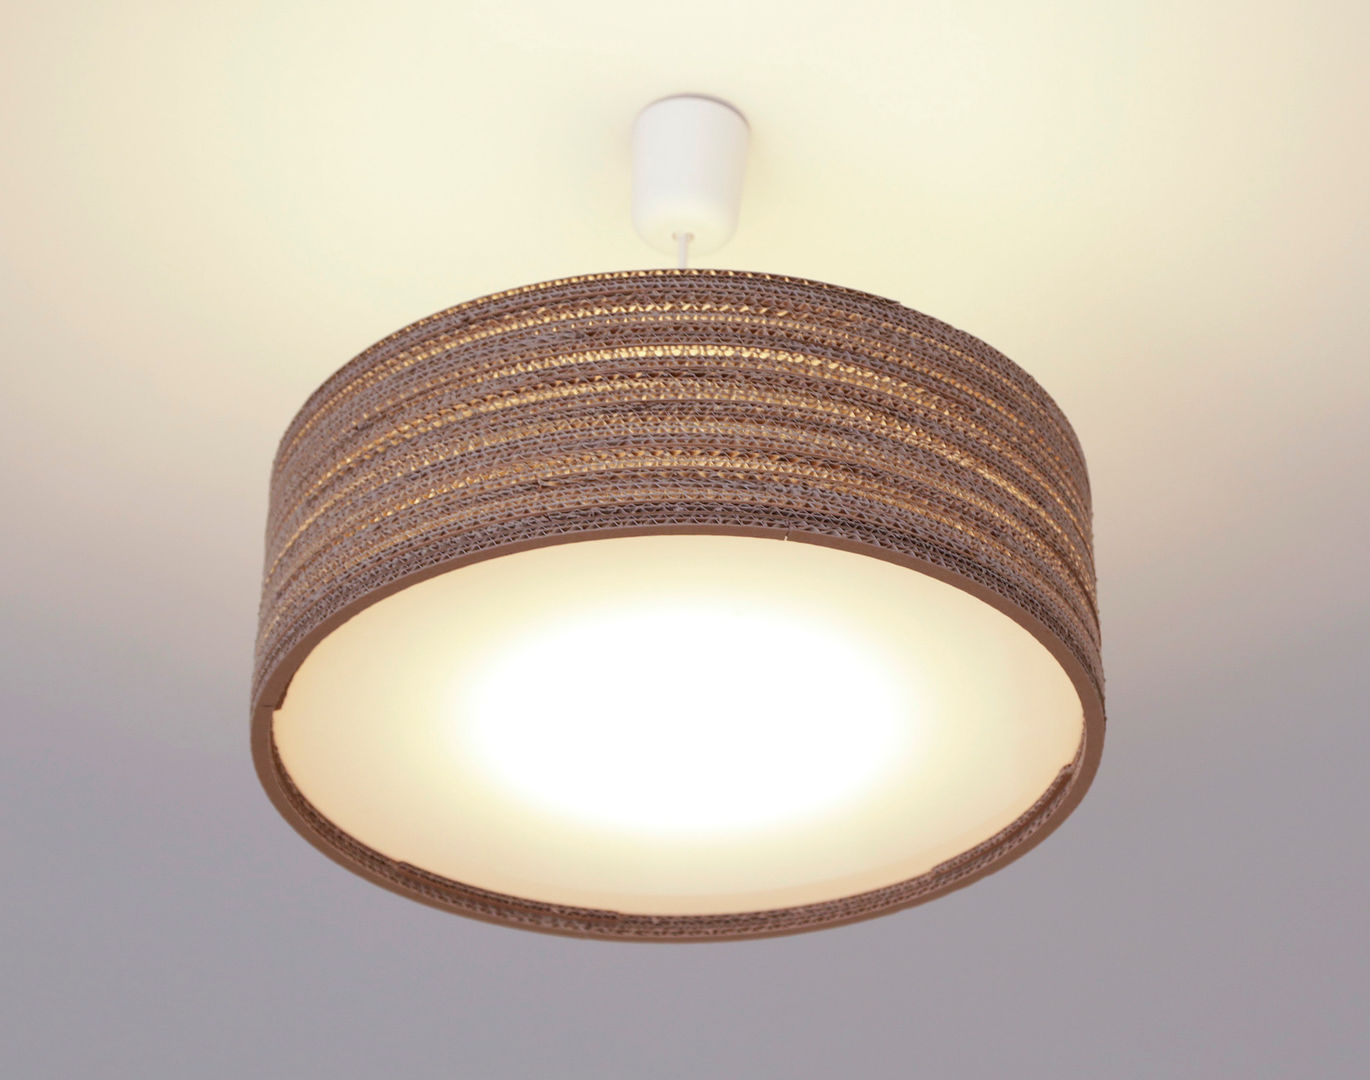 Wavelights - Lampen aus Wellpappe, packbar packbar Living room Paper Lighting